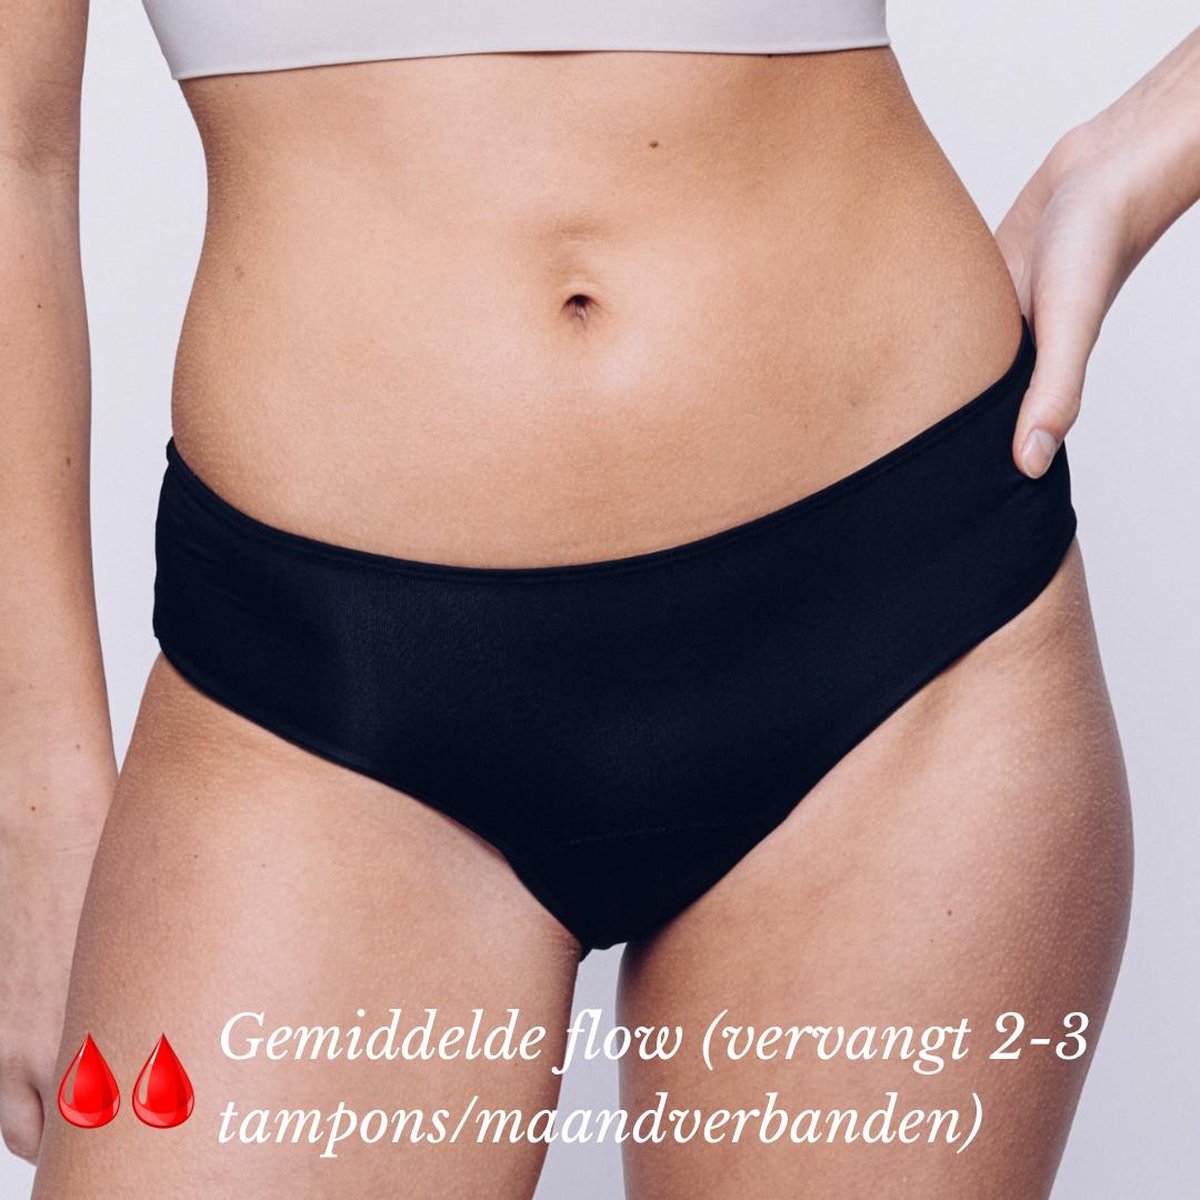 Menstruatie Ondergoed - Period Underwear - Menstruatieslip - Menstruatie Onderbroekje - XL - Classic - MyFleury®